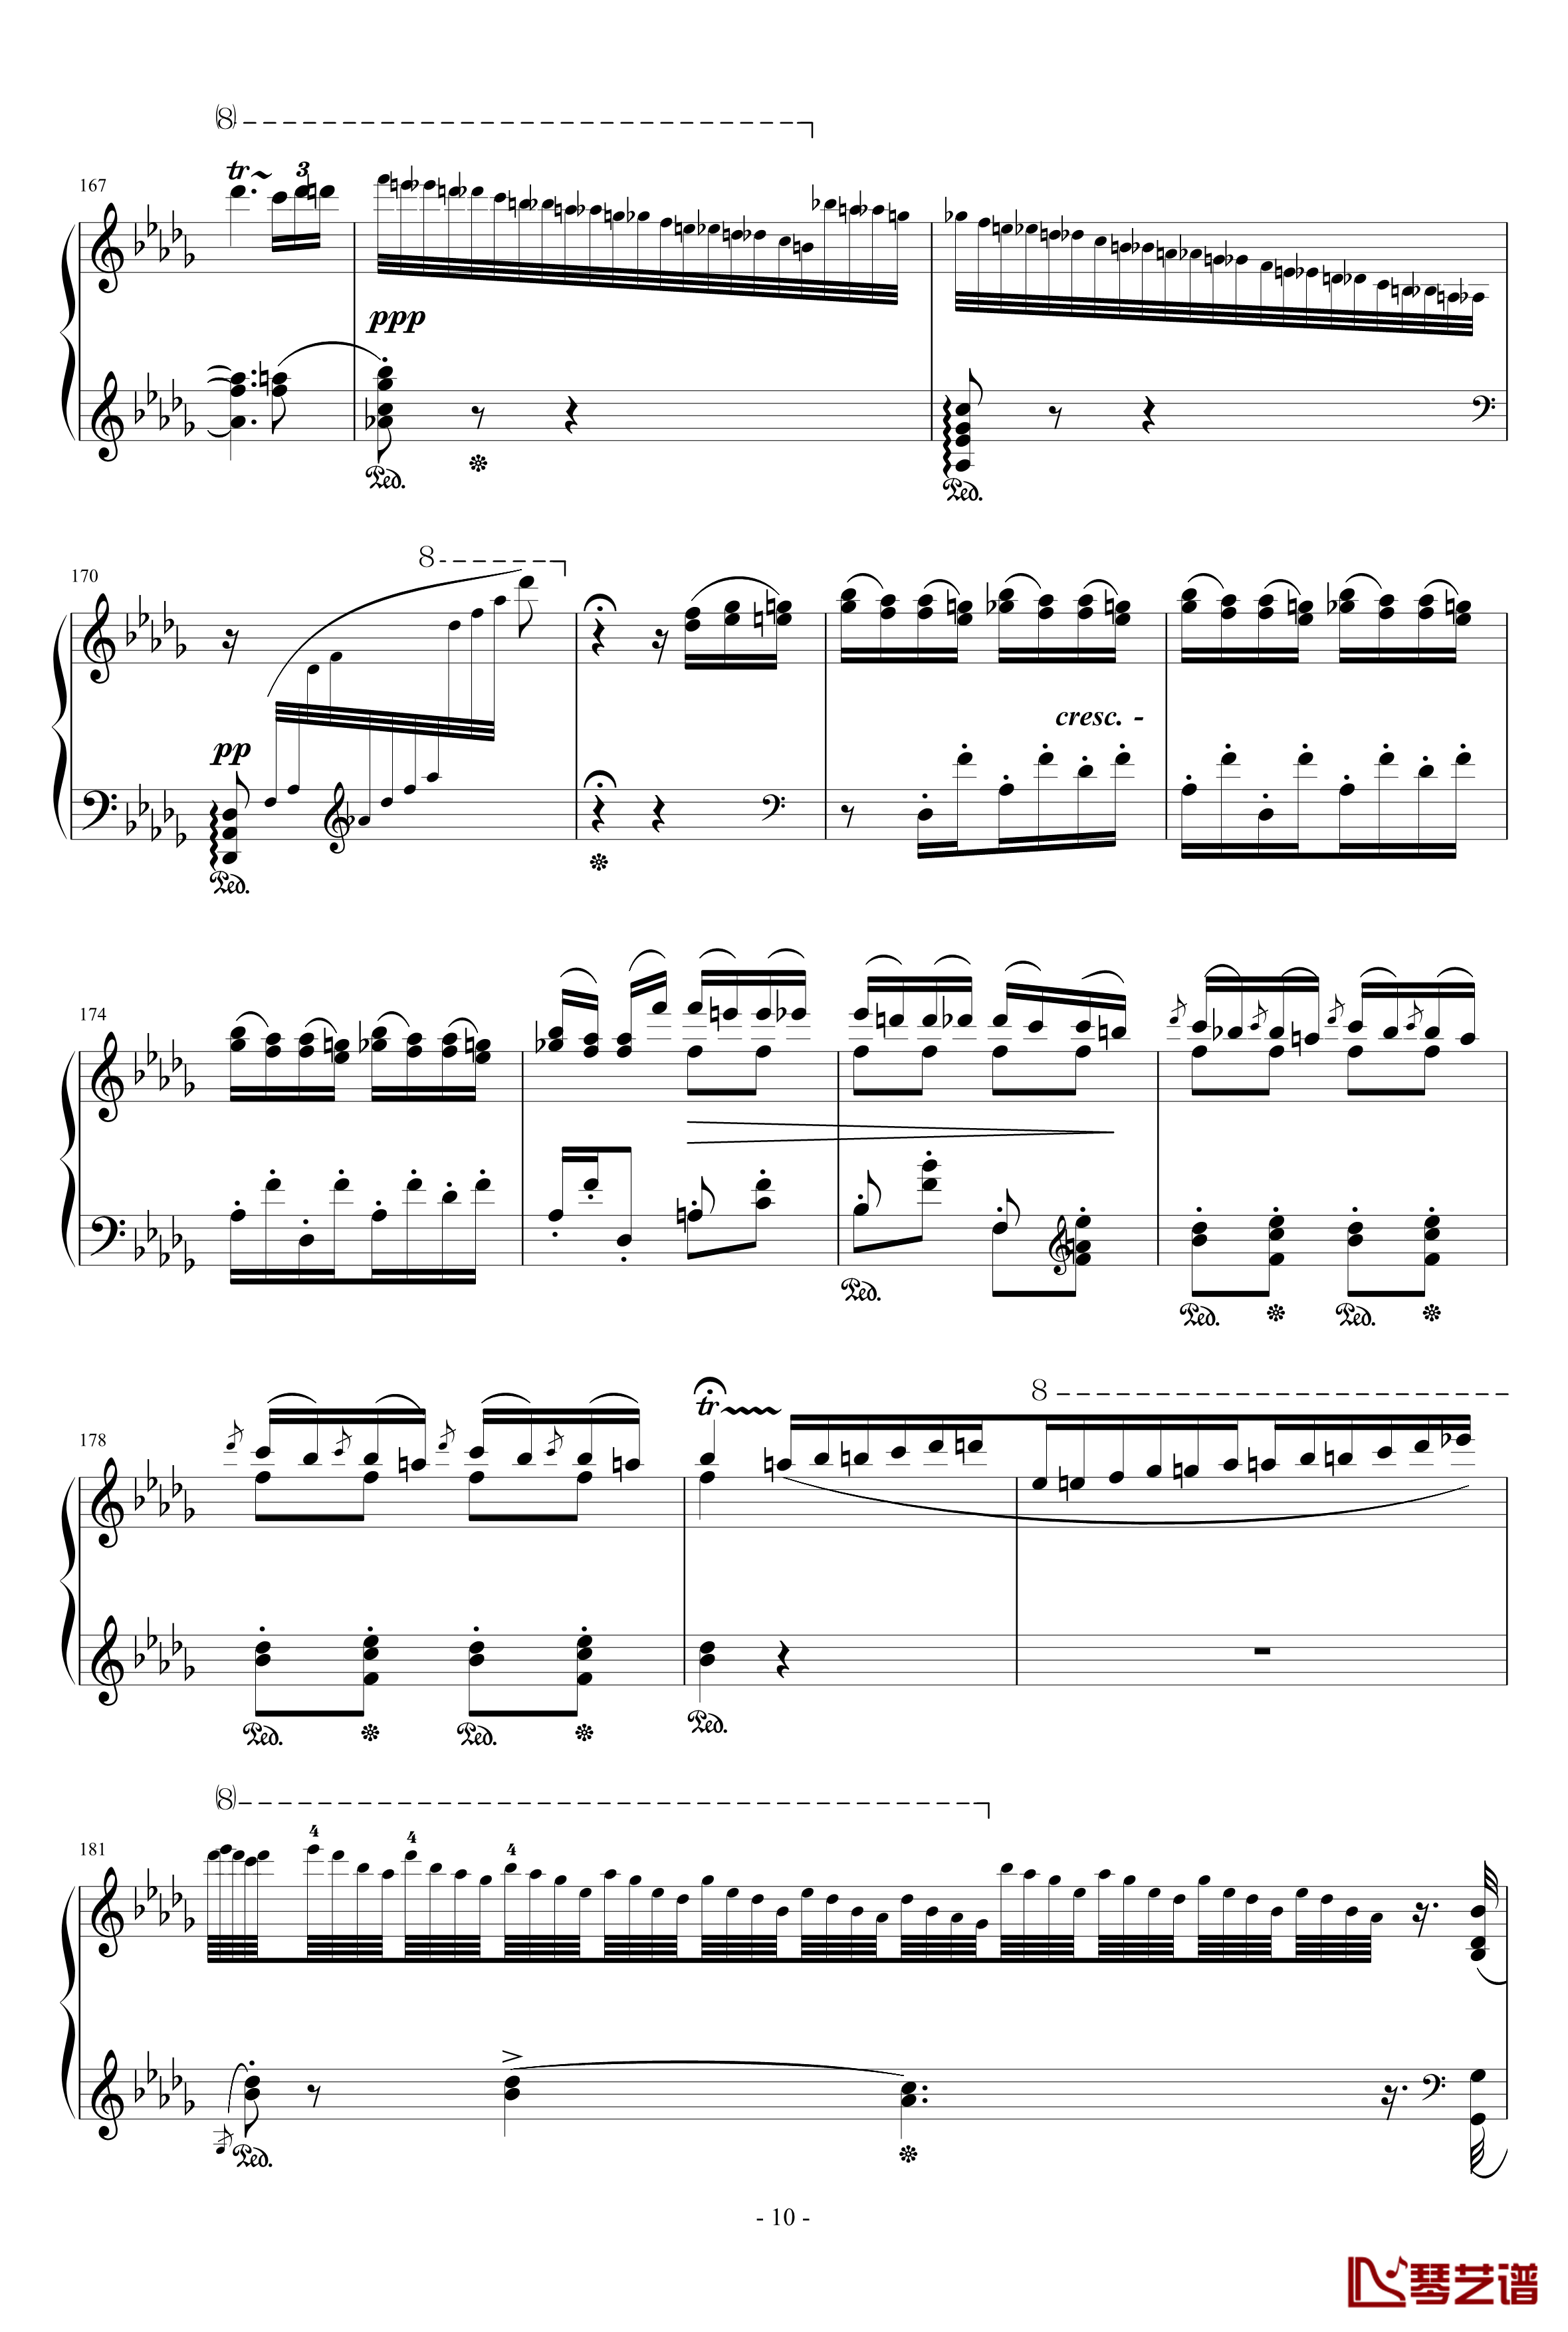 匈牙利狂想曲12号钢琴谱-著名的匈狂-李斯特10